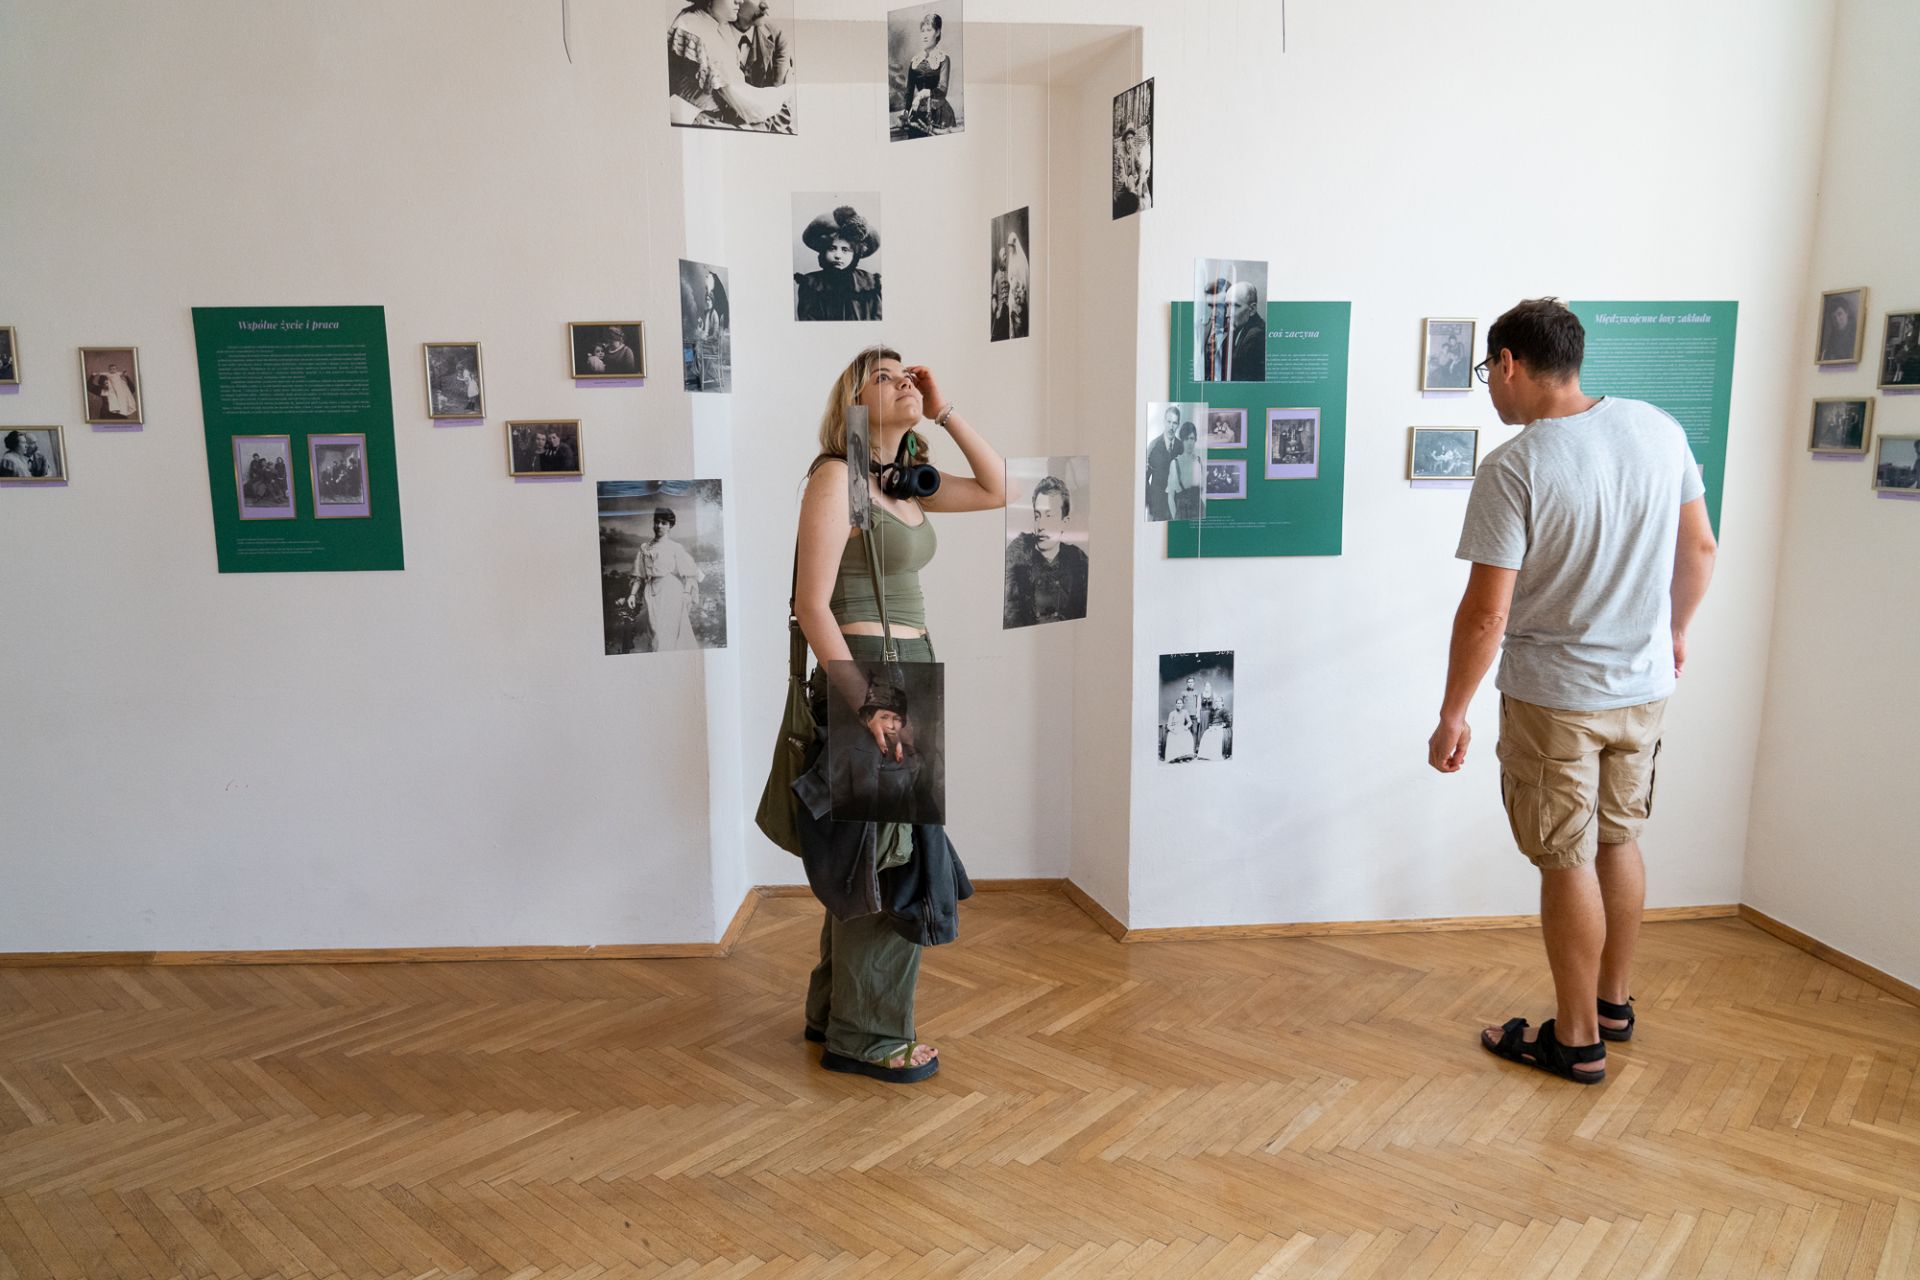 Kobieta i mężczyzna oglądają wystawę fotografii w sali wystawowej.